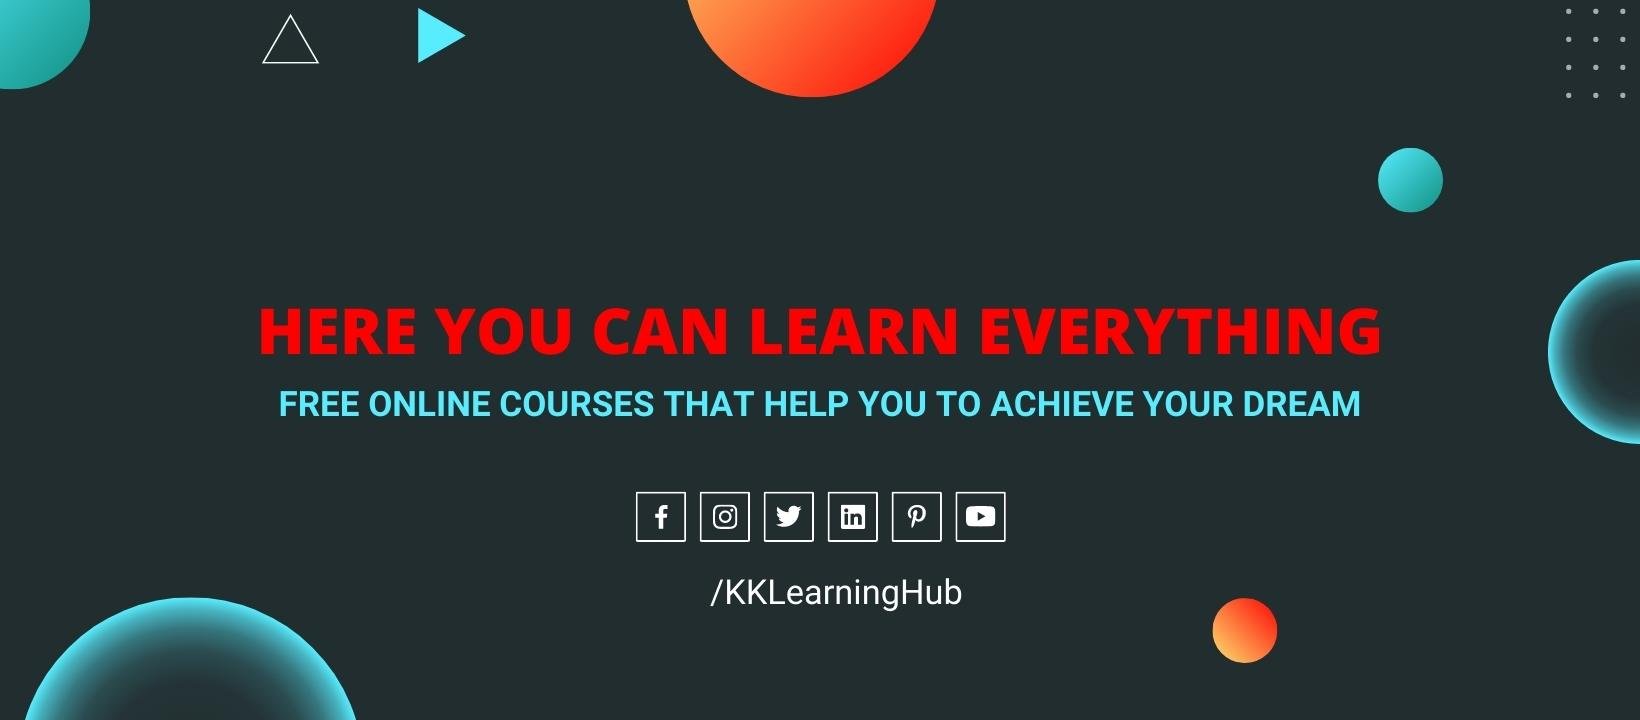 KK Learning Hub cover